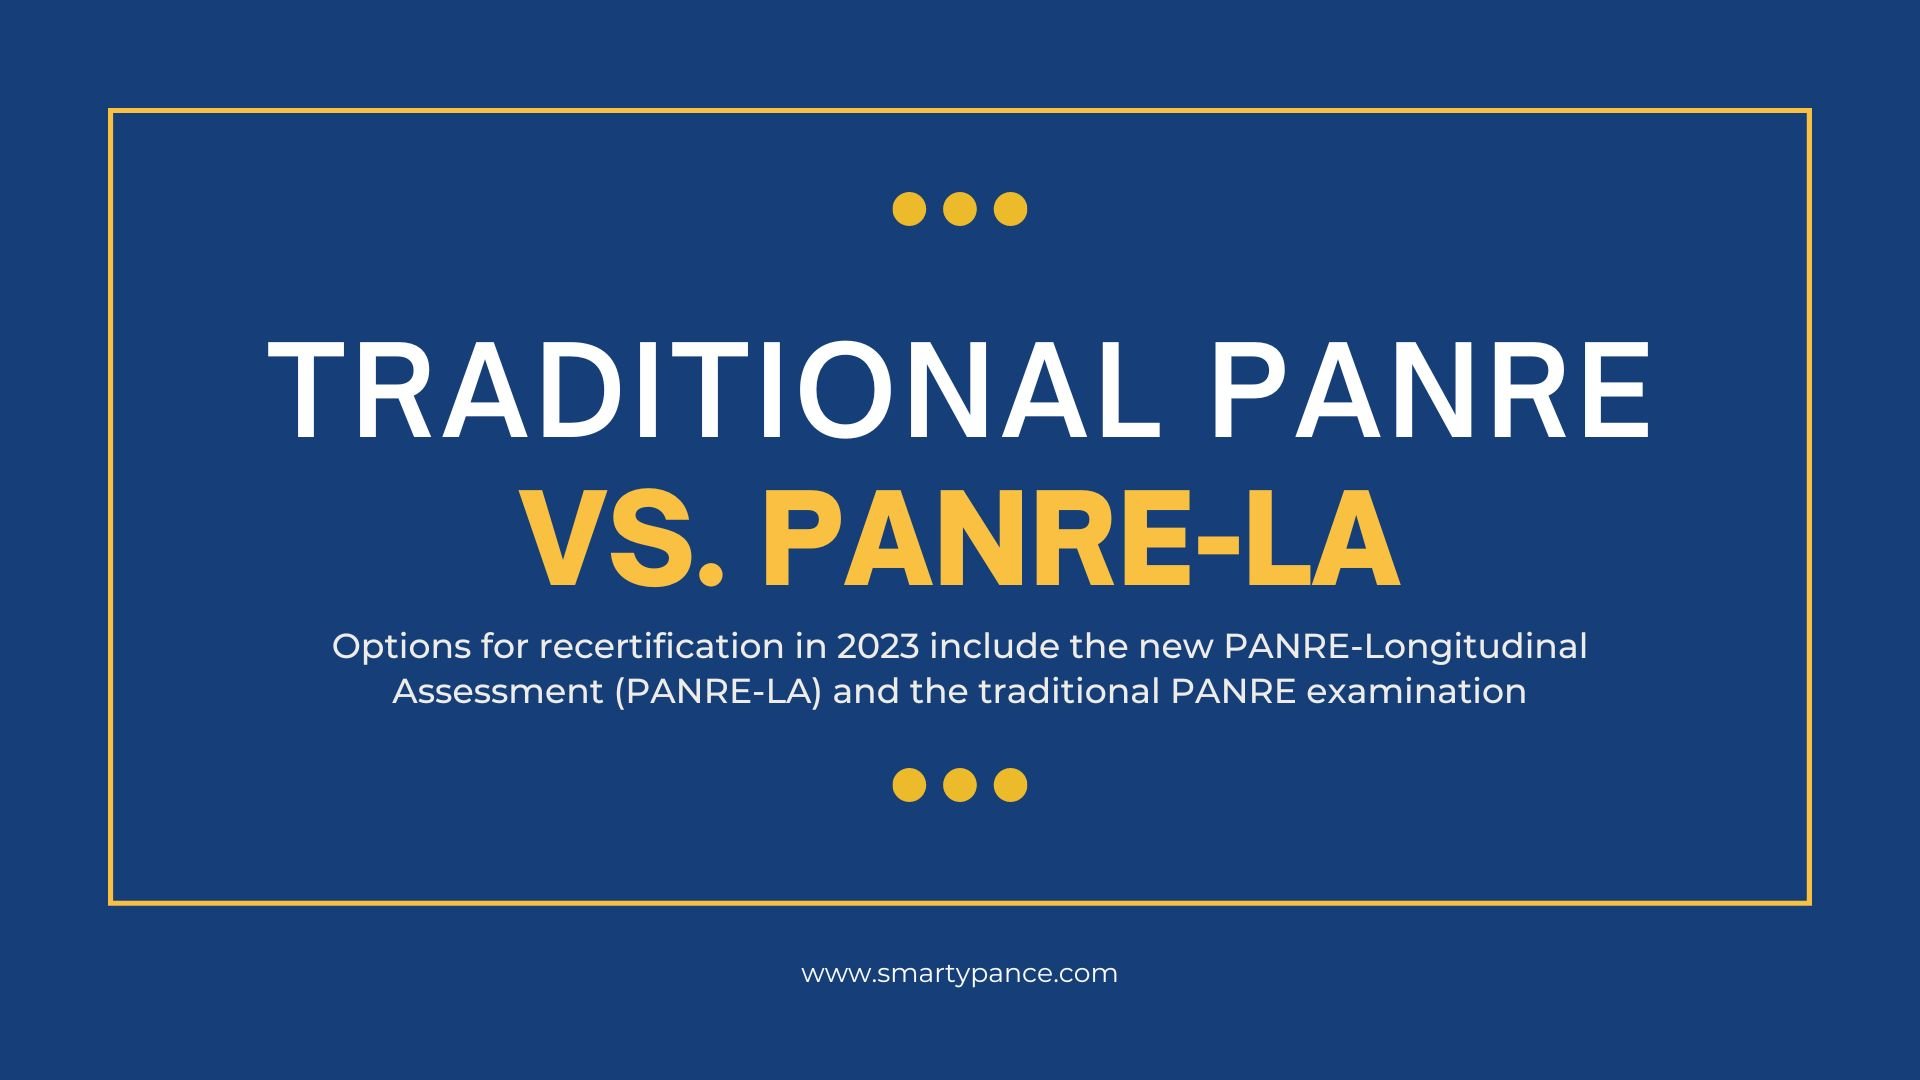 Traditional PANRE versus The PANRE-LA